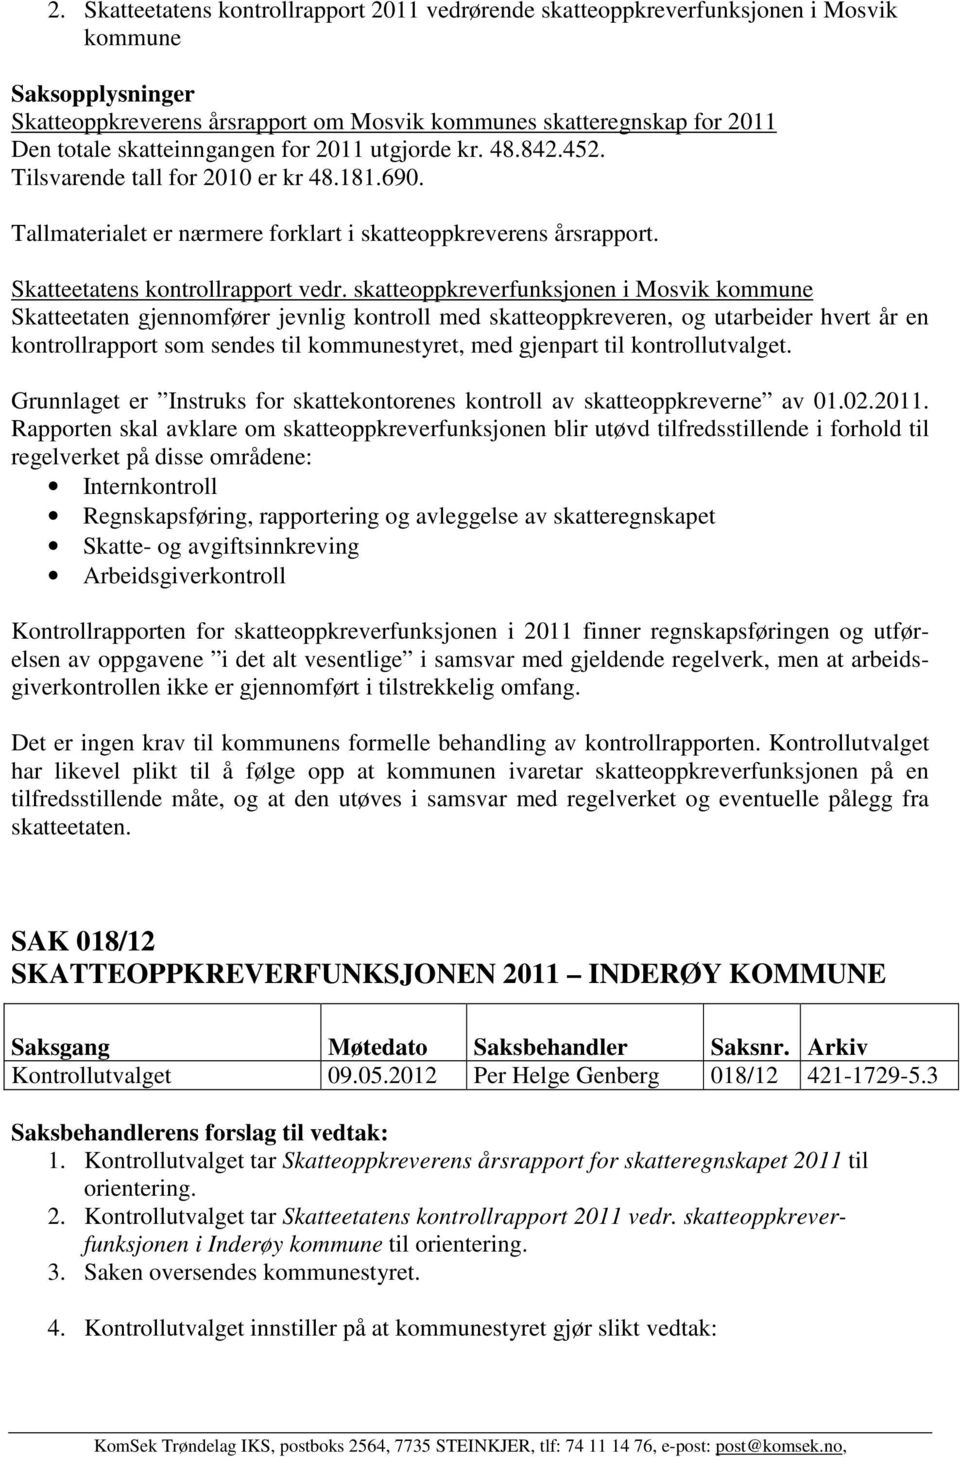 skatteoppkreverfunksjonen i Mosvik kommune Skatteetaten gjennomfører jevnlig kontroll med skatteoppkreveren, og utarbeider hvert år en kontrollrapport som sendes til kommunestyret, med gjenpart til